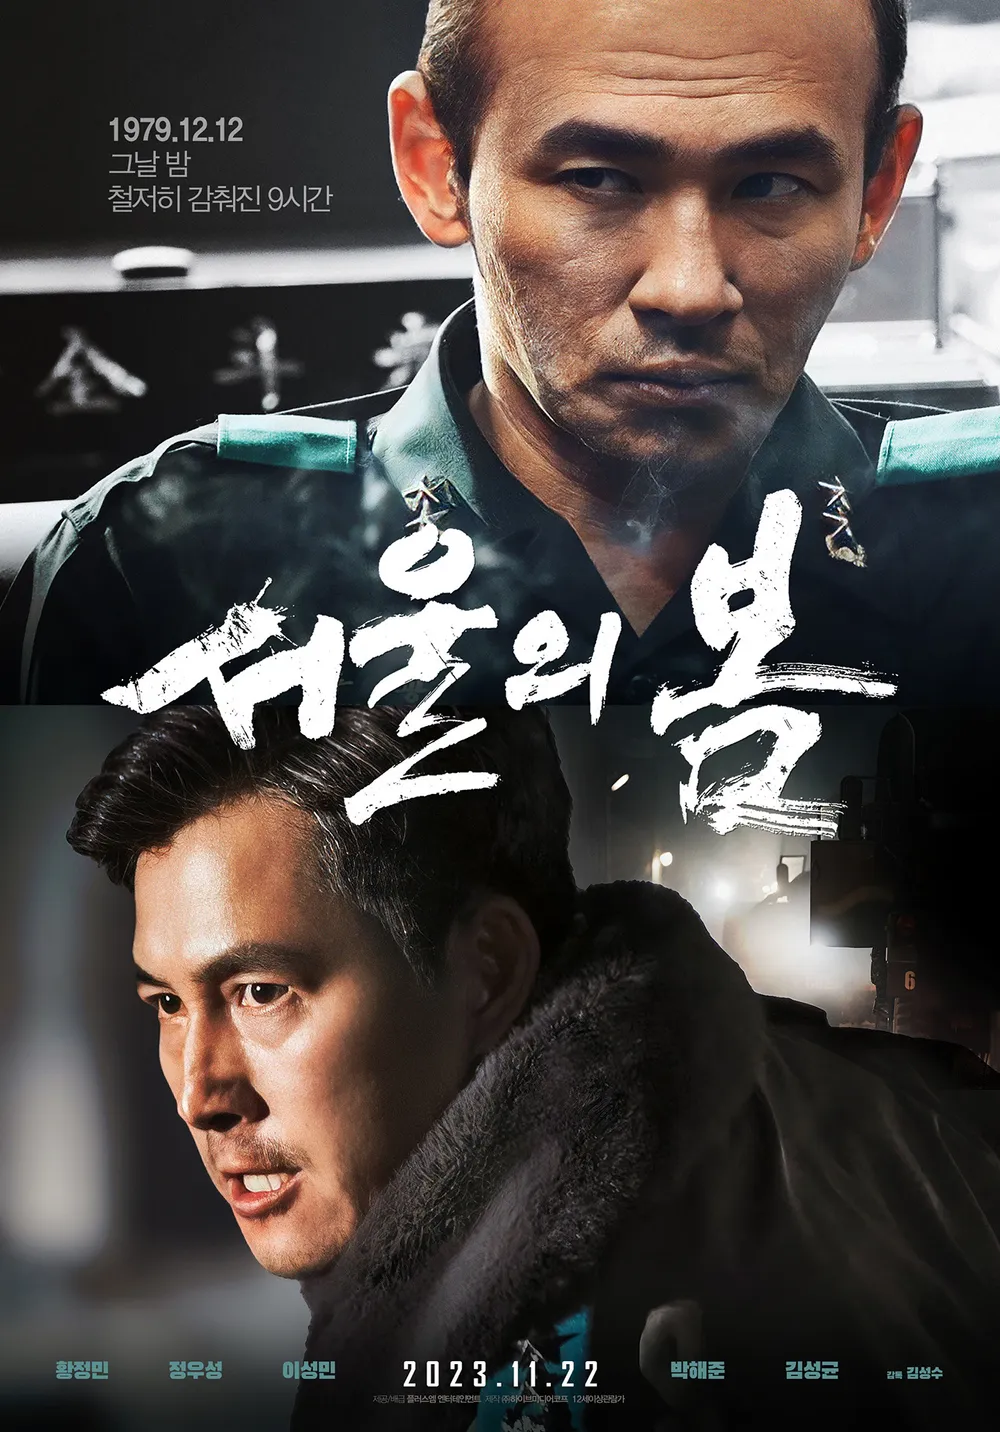 [미국일상]  AMC 극장에서 한국영화 ‘서울의 봄’ 상영예정 – 12월 8일부터 12:12: The Day (Seoul Spring)